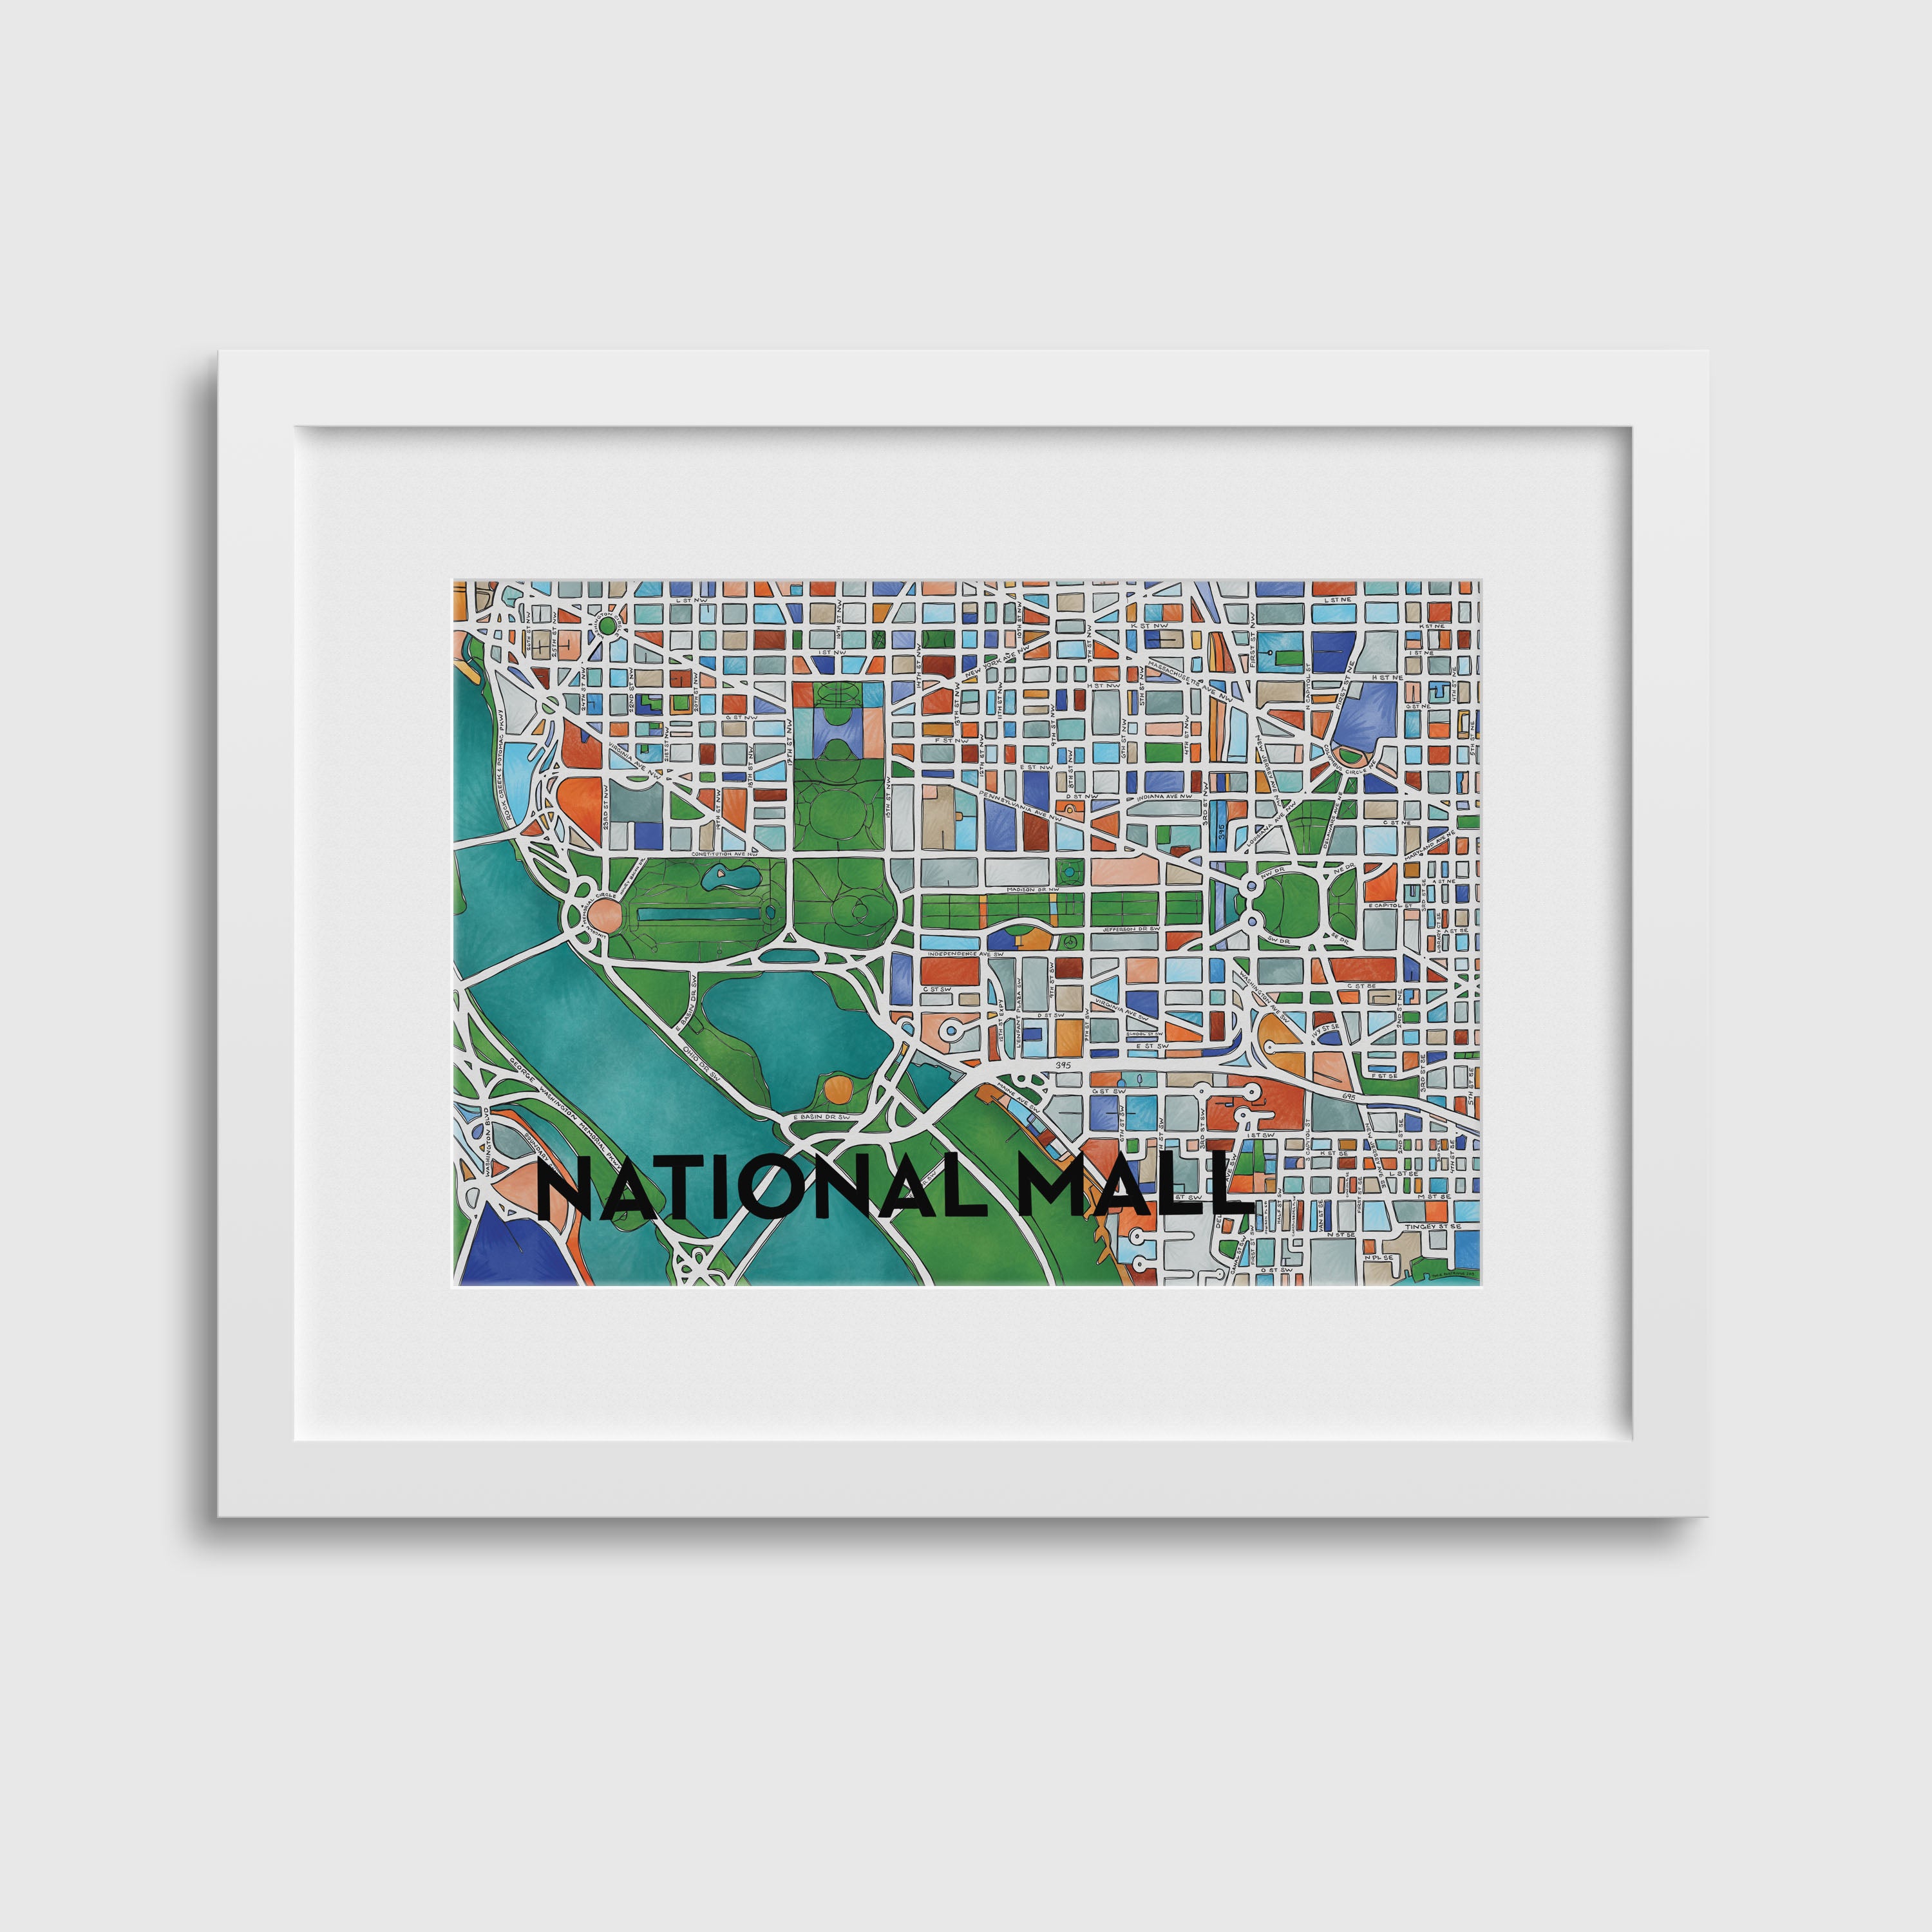 National Mall Print